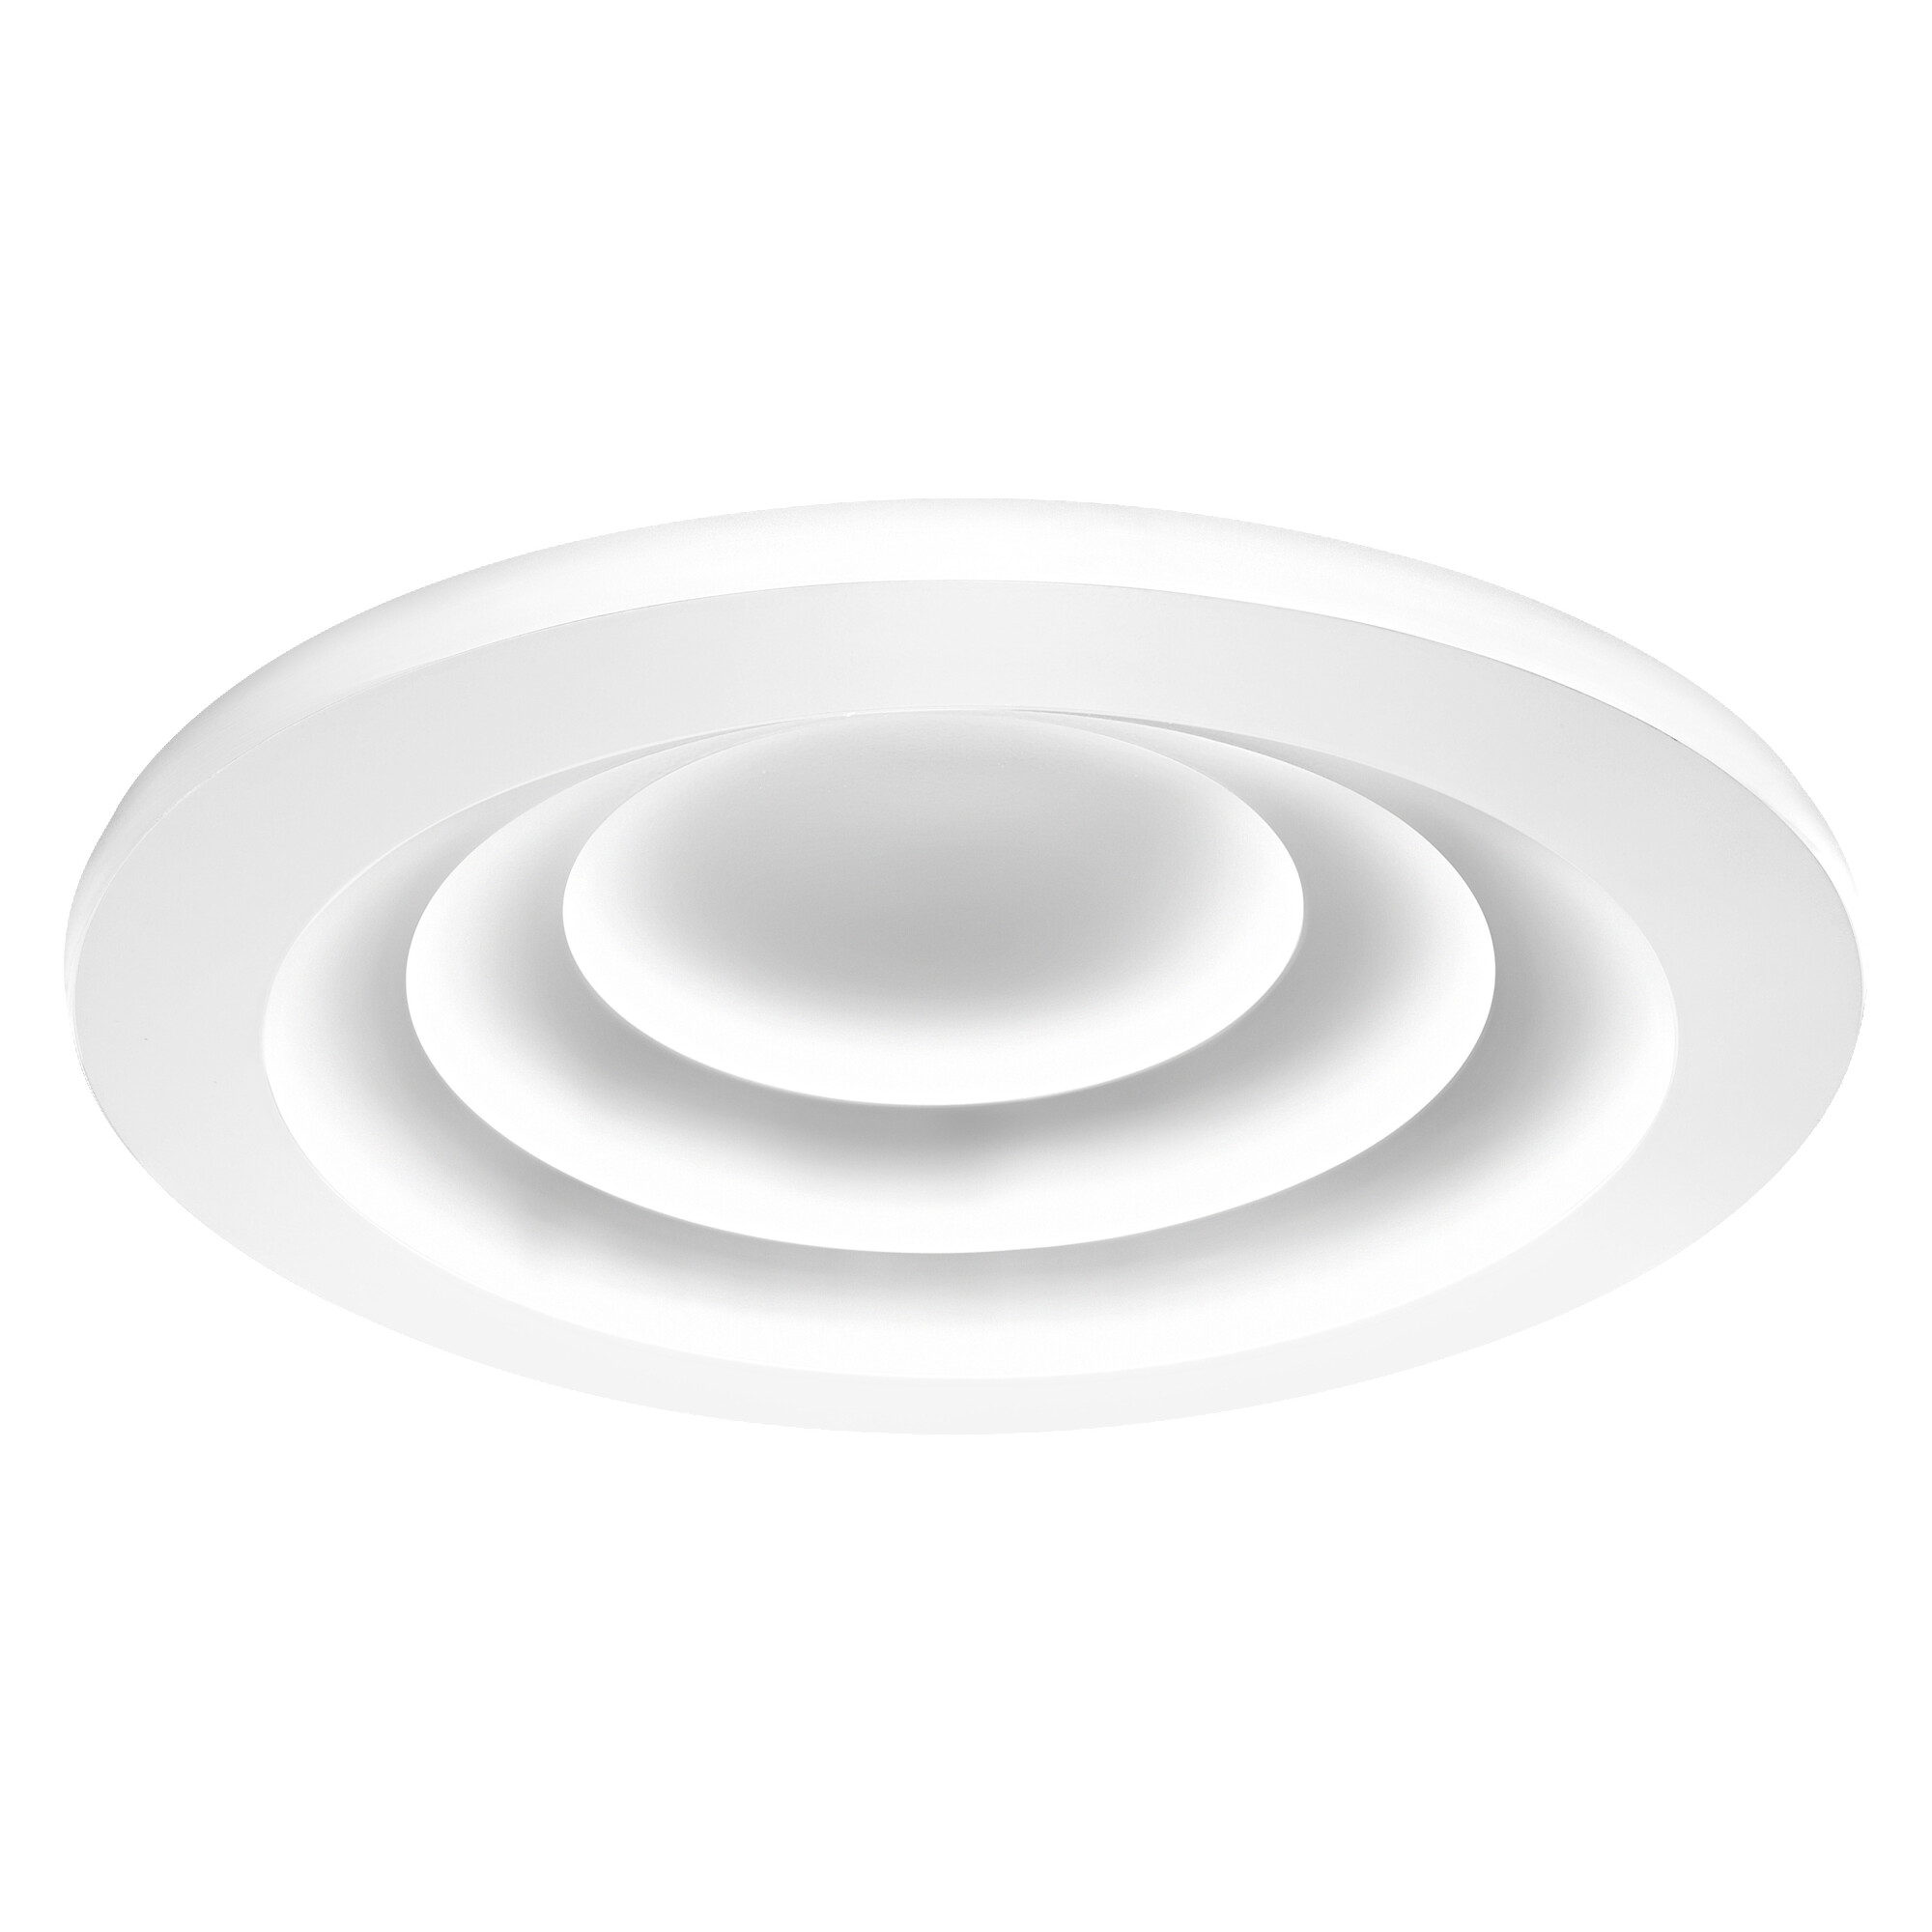 LED-Deckenleuchte 'Smart Spiral' weiß Ø 50 cm 4060 lm + product picture